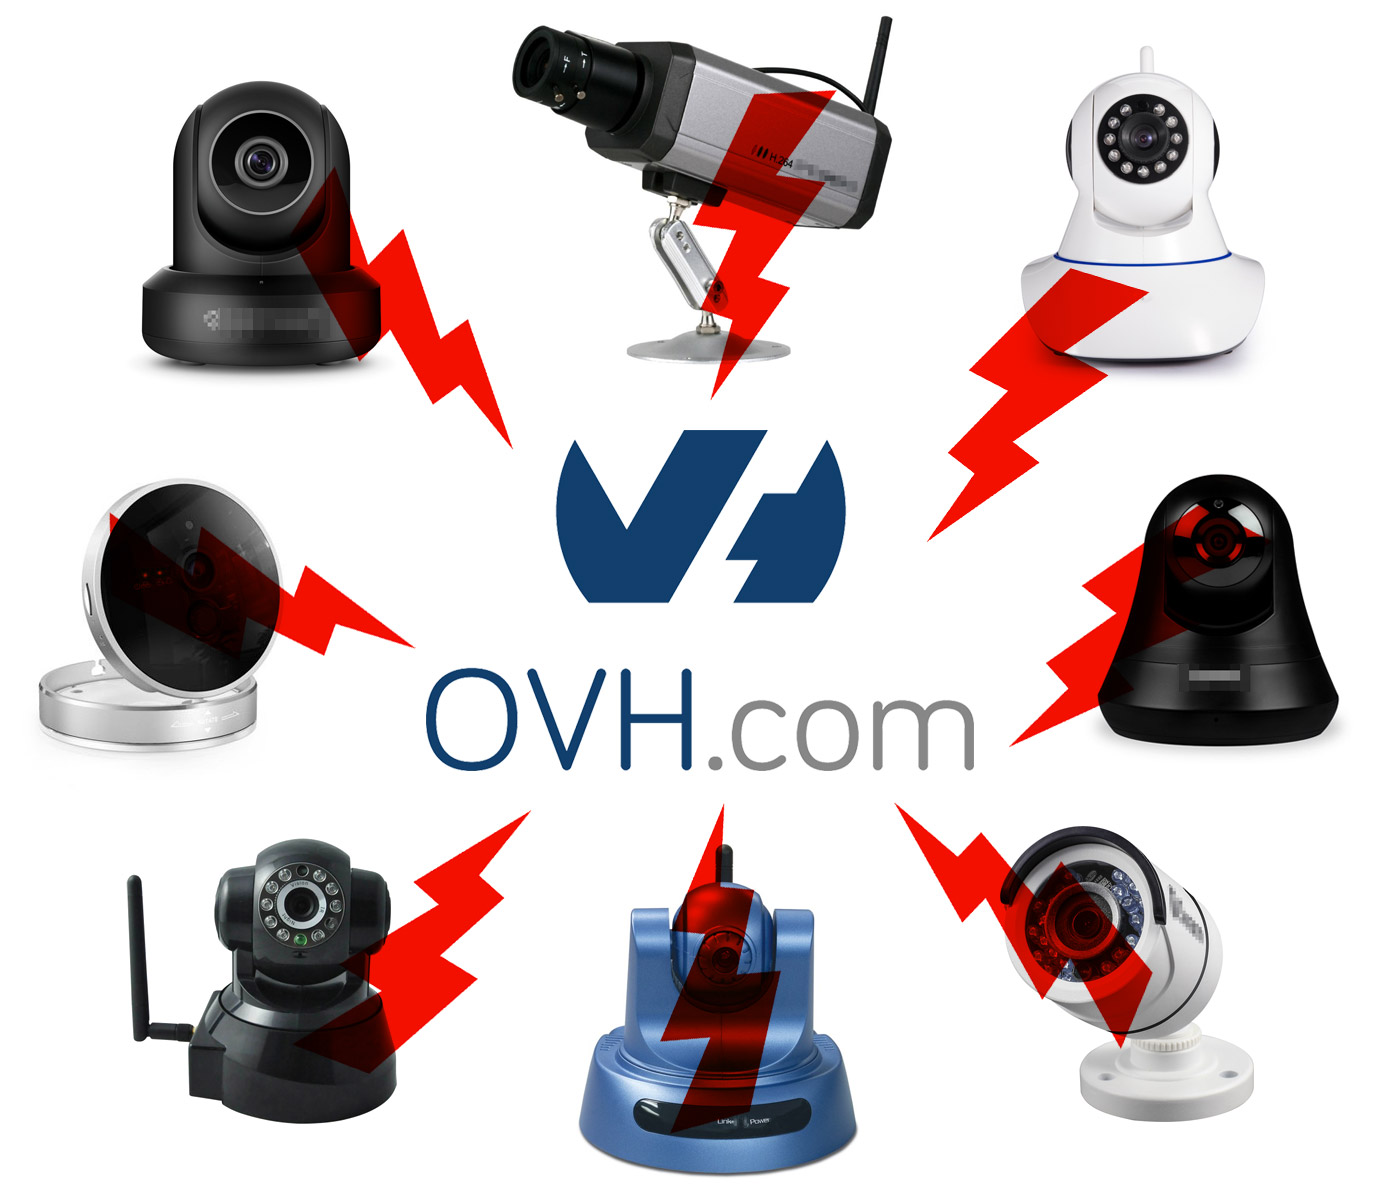 IoT CCTV Botnet vs OVH.